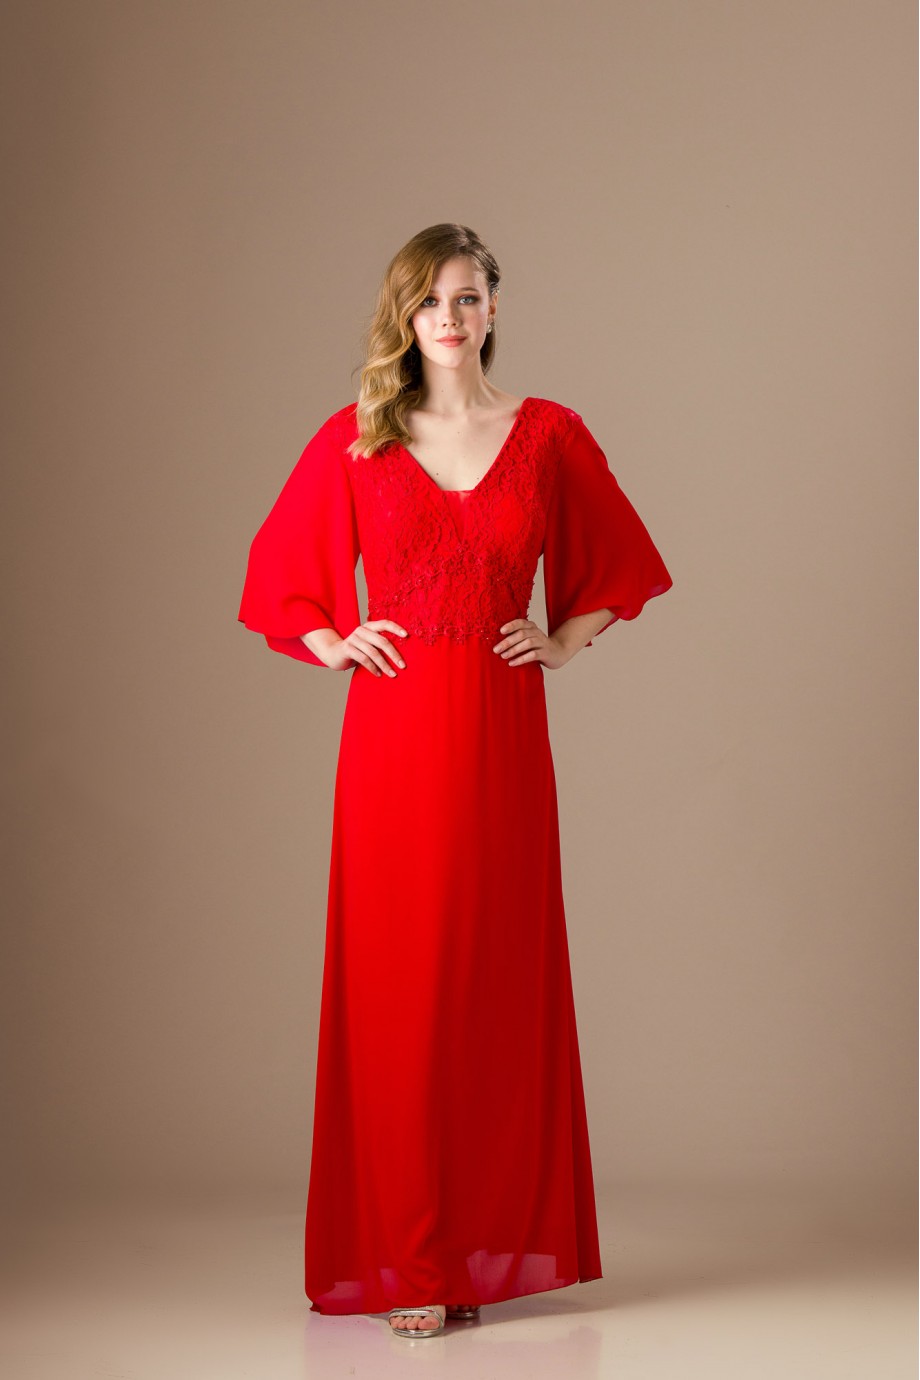 Μακρύ κόκκινο φόρεμα με ιδιαίτερα μανίκια